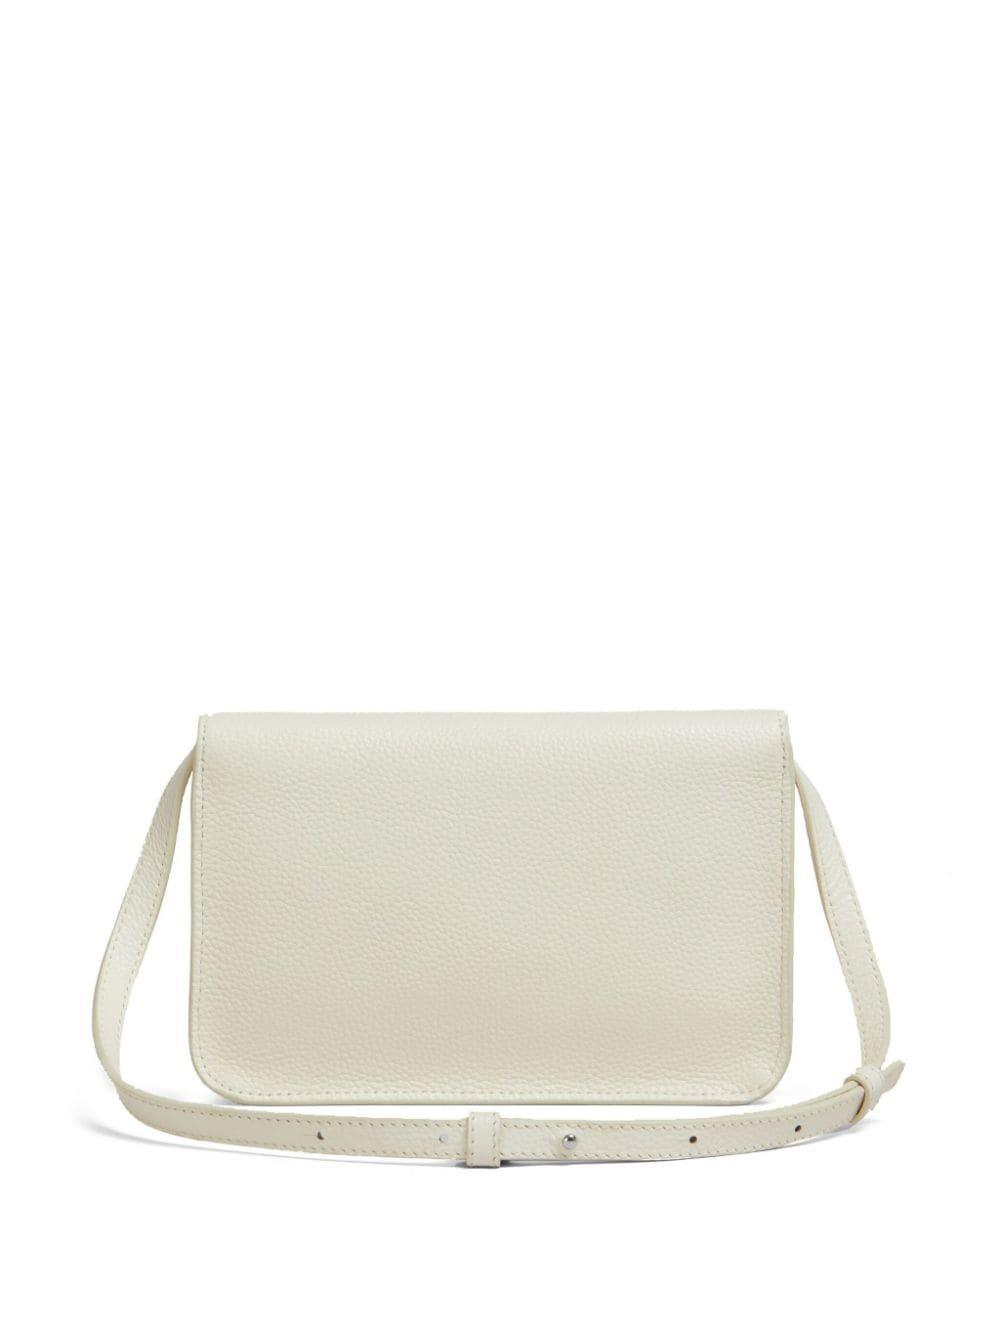 Marni logo-embroidered leather shoulder bag - White